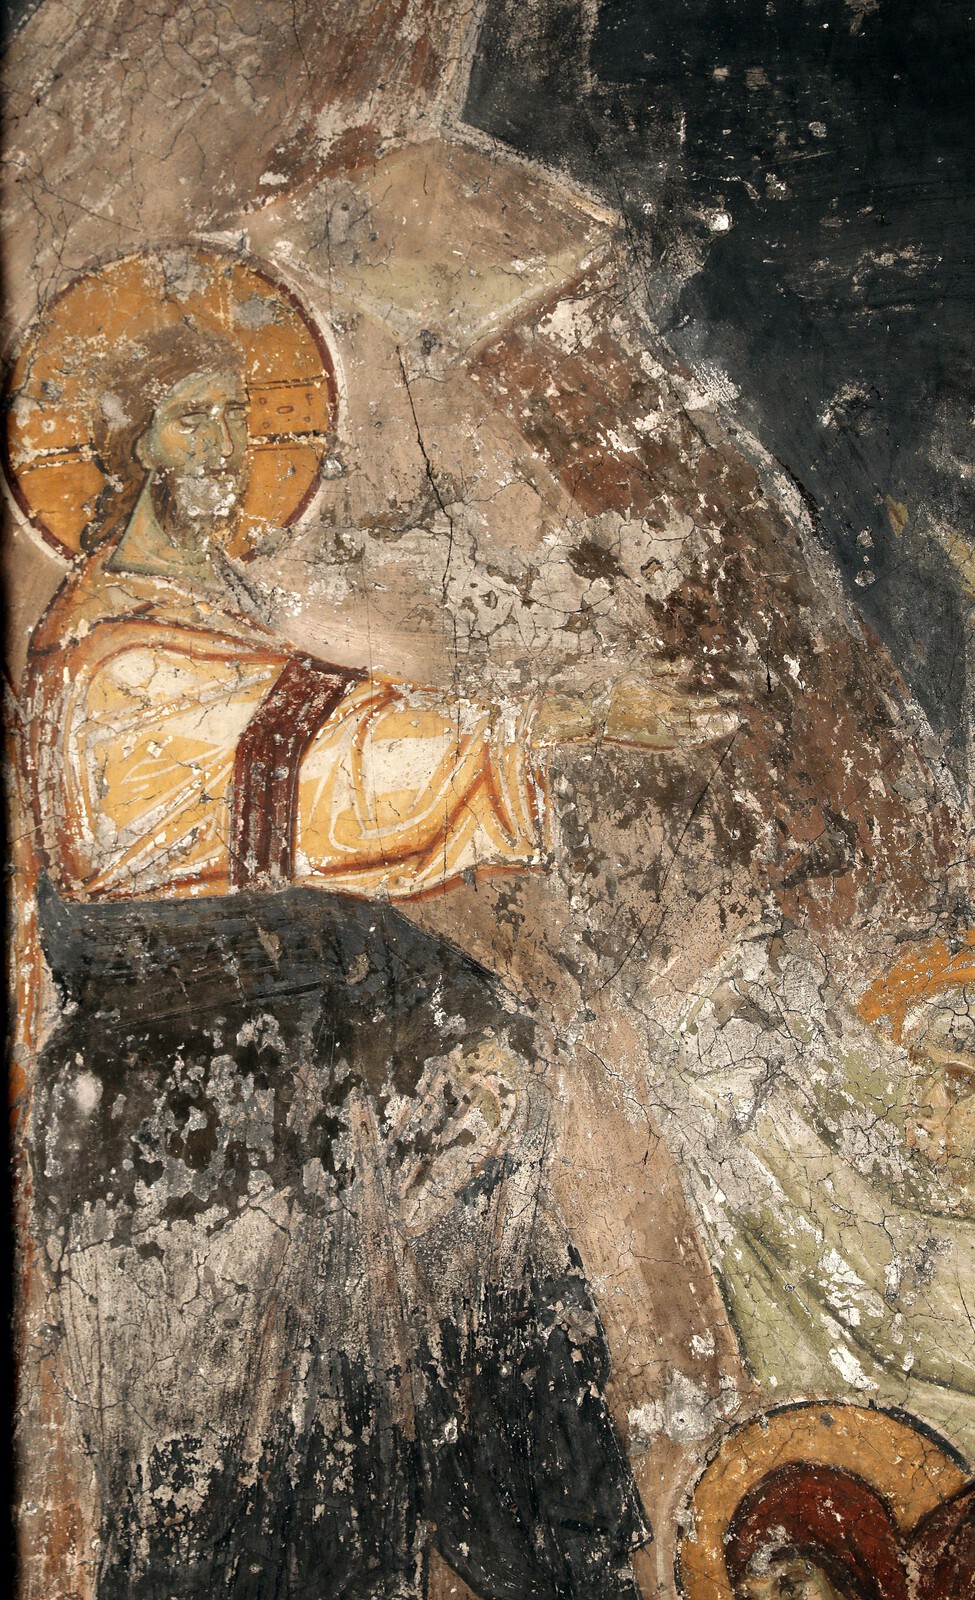 Raising of Lazarus, detail